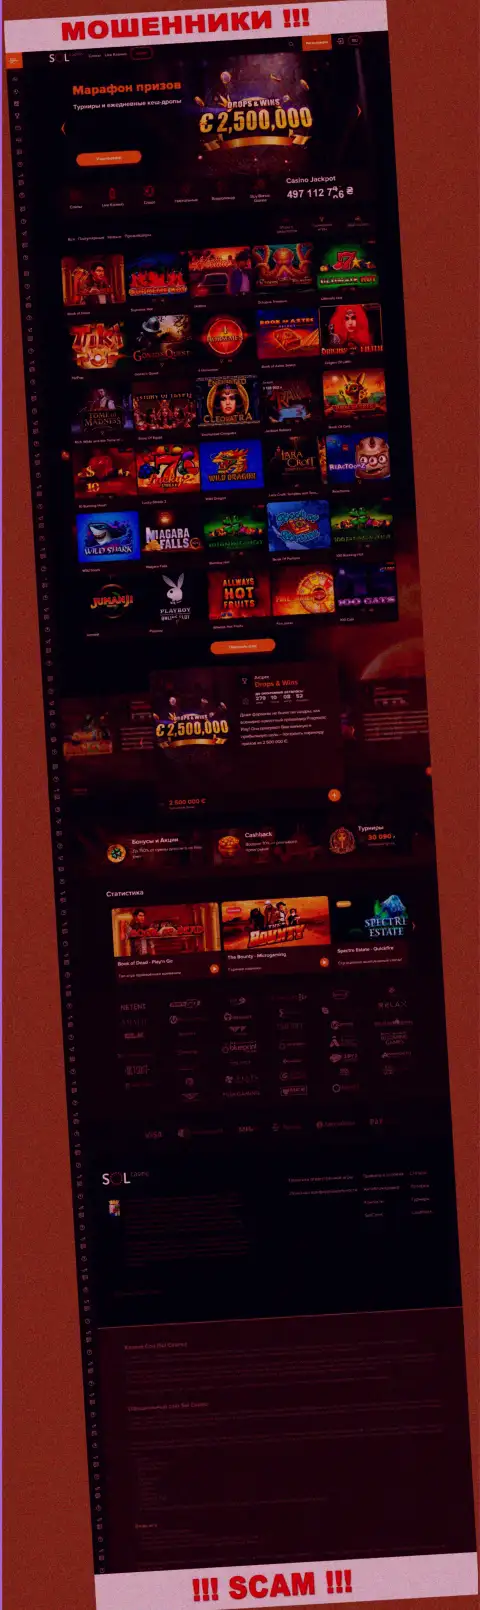 Основная страница официального веб-портала махинаторов Sol Casino